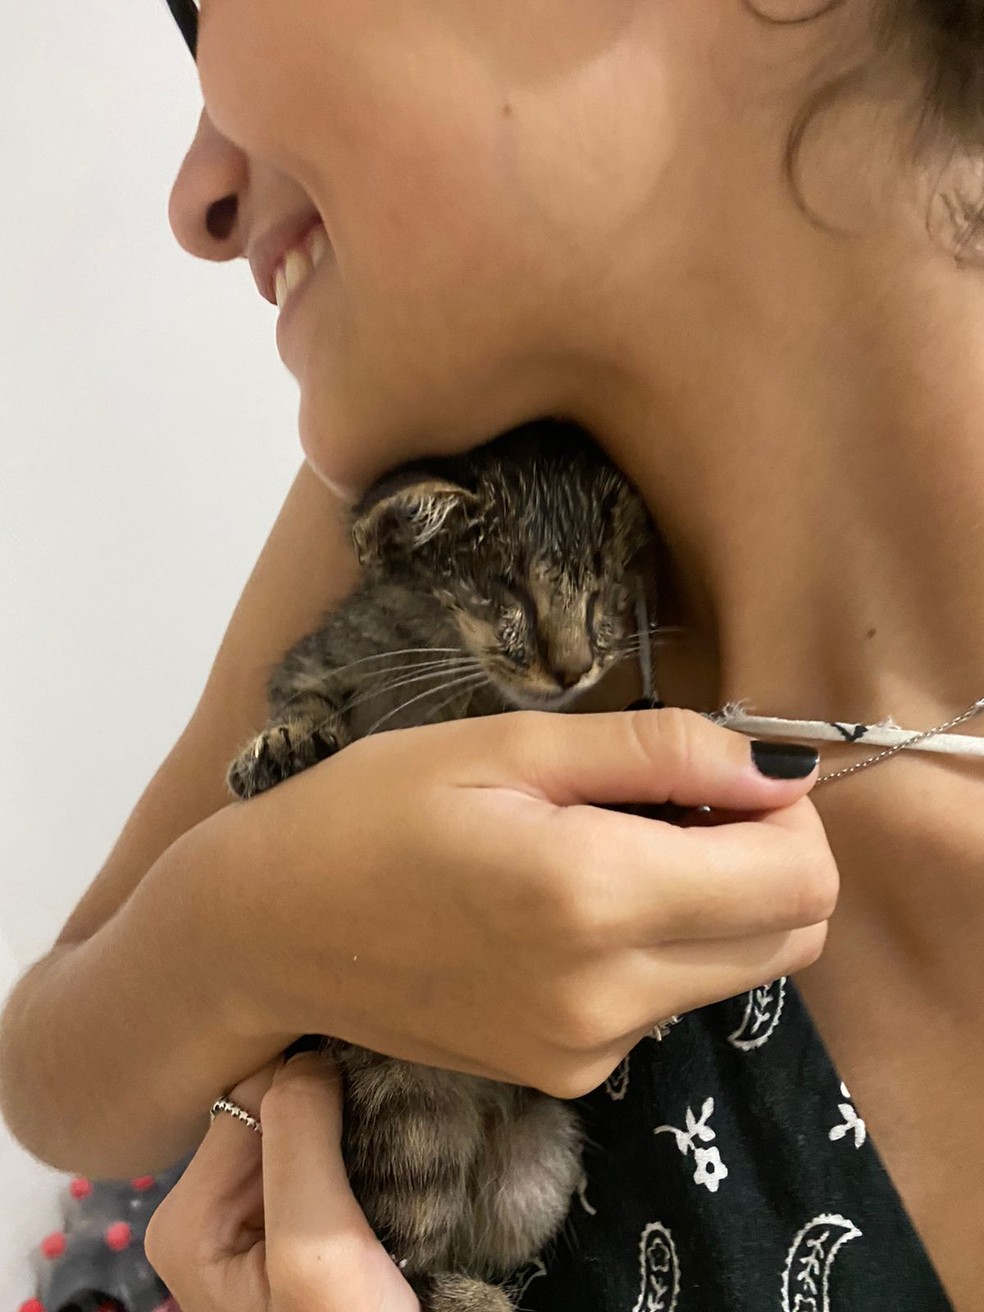 Para Rafaela, ficou a gratidão do tempo compartilhado com o seu gatinho resgatado, além das muitas saudades — Foto: Rafaela Lobão/ Arquivo pessoal